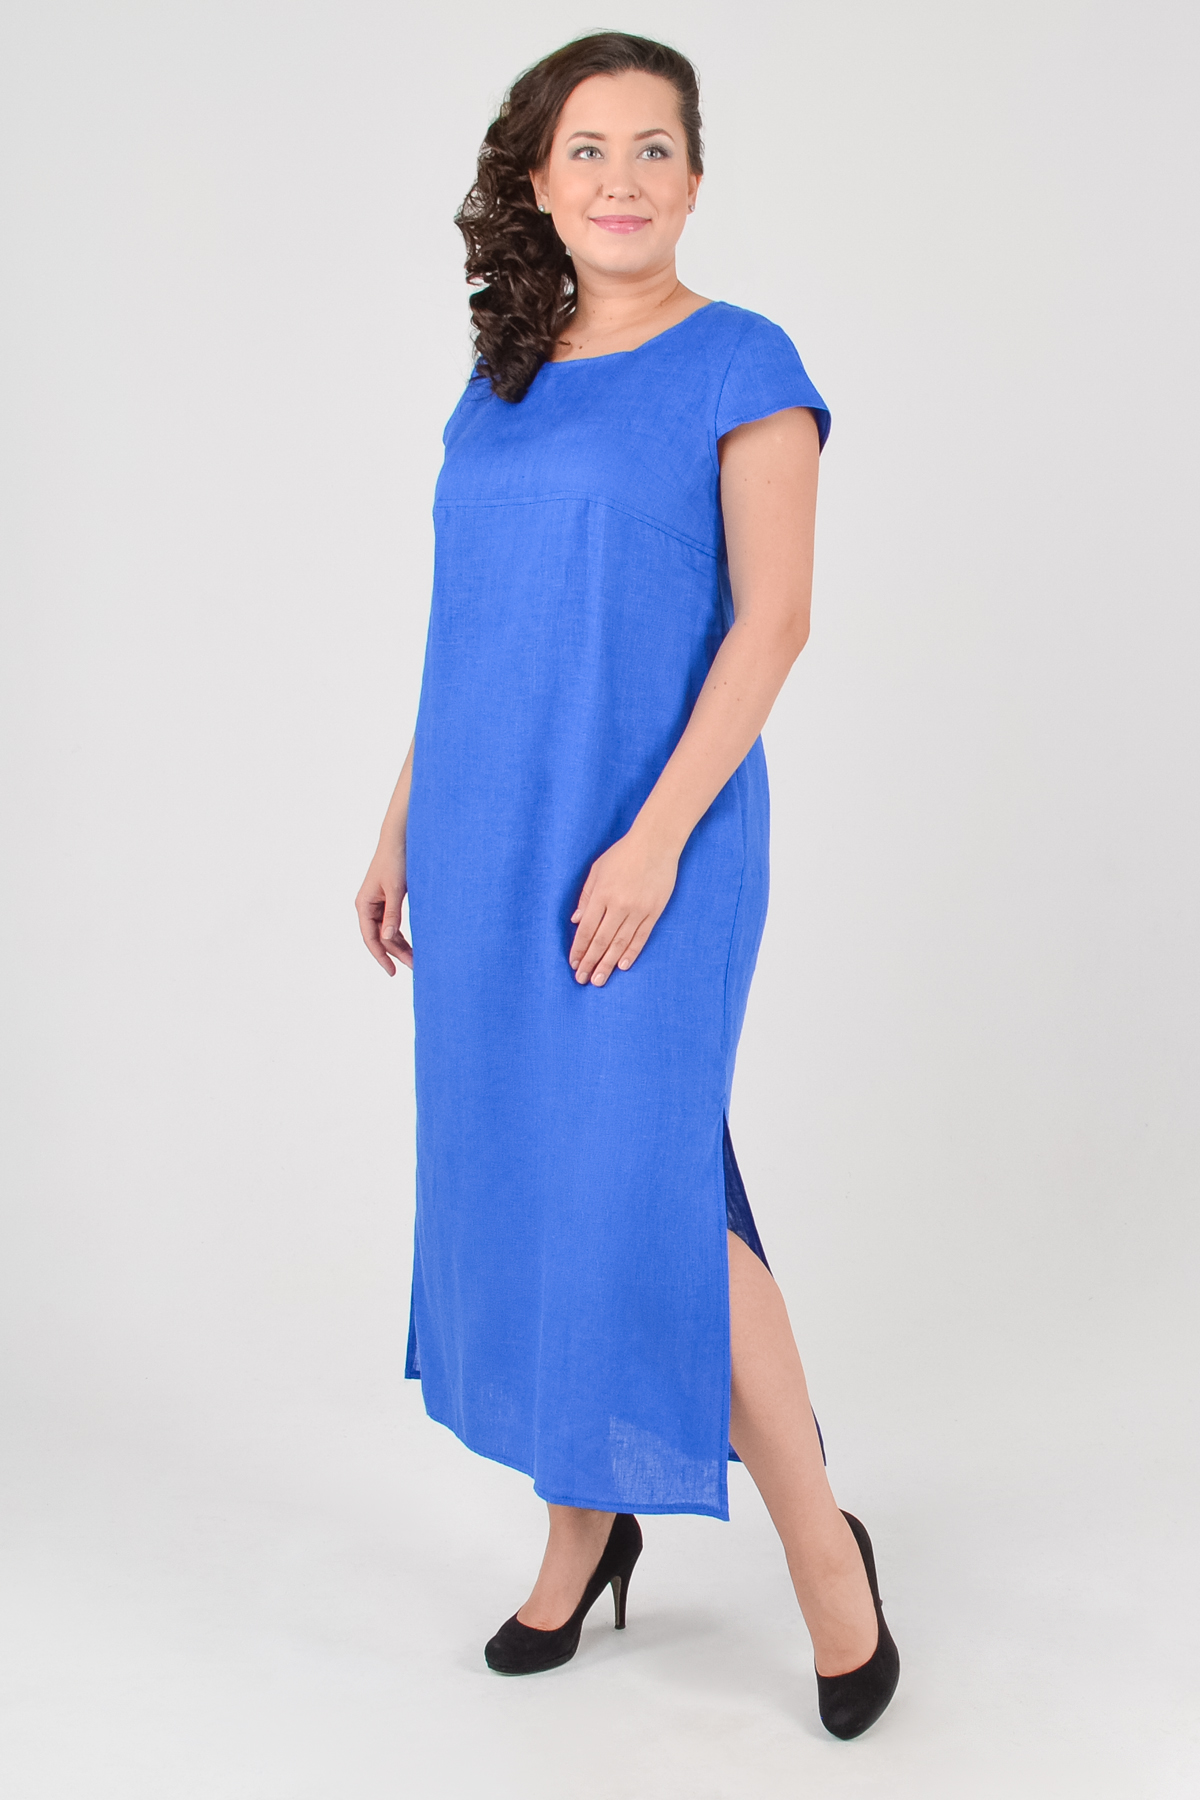 Платье женское Gabriela gb-5169 синее 48 RU